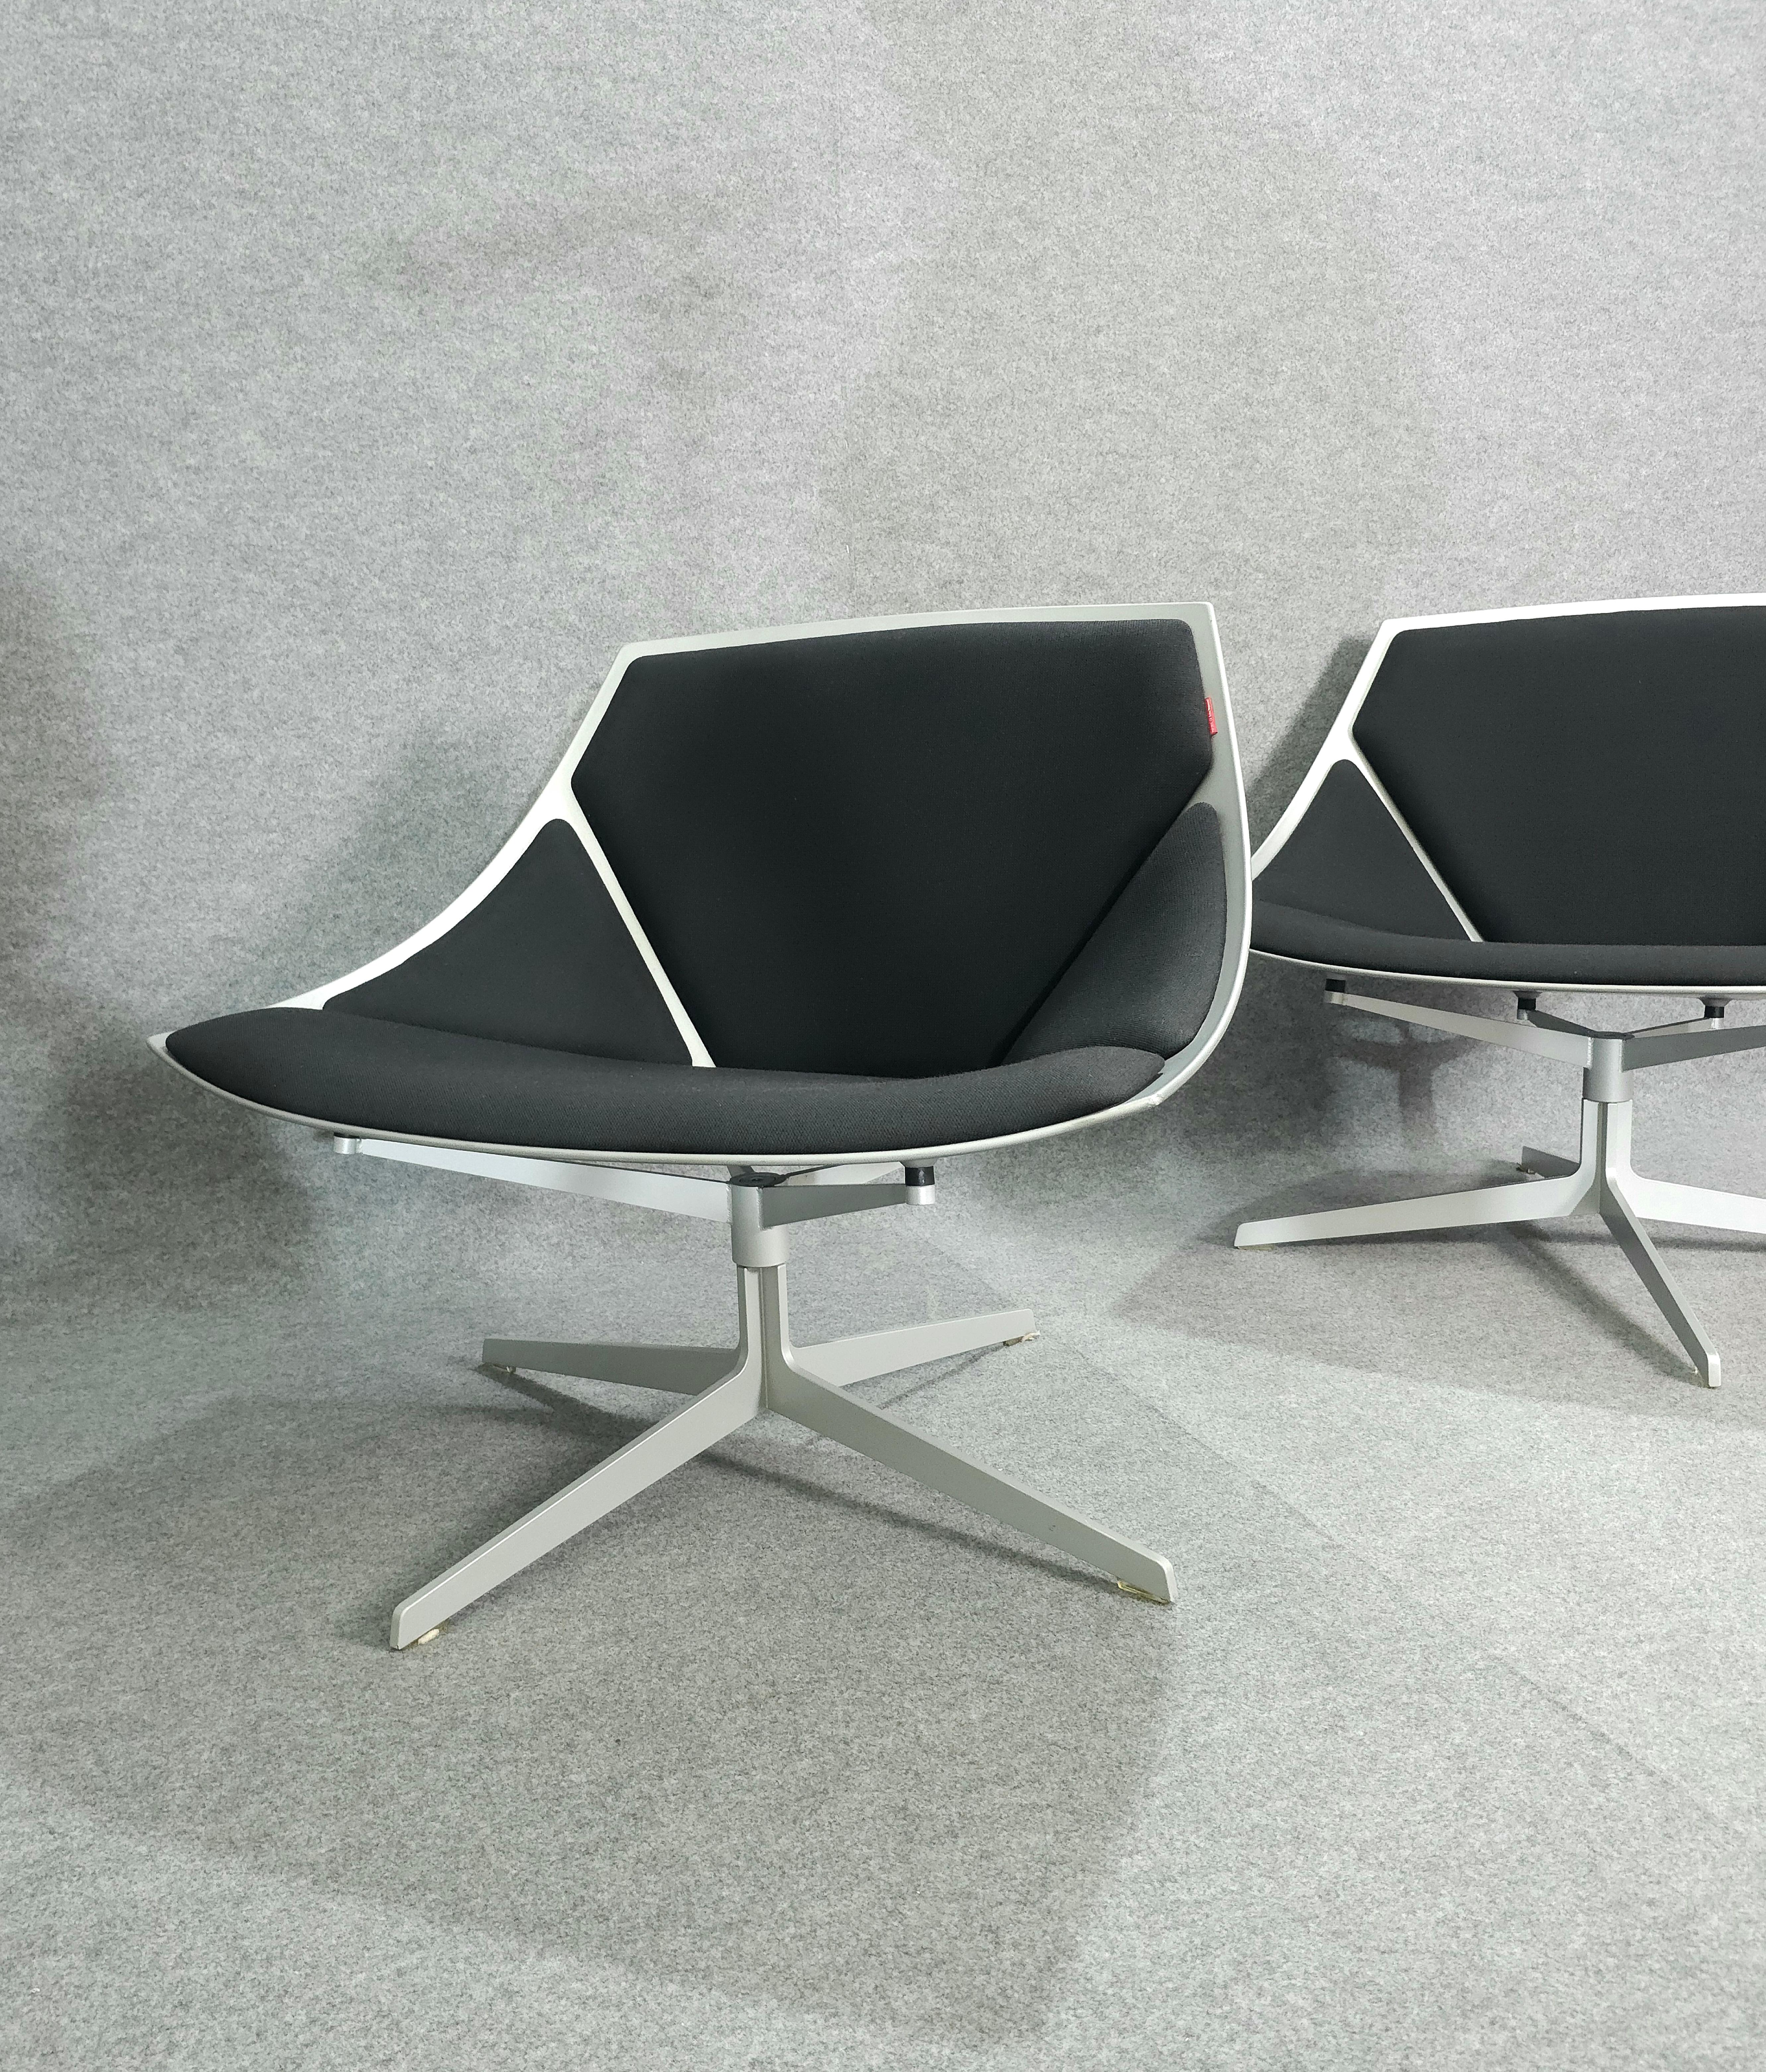 Jehs & Laub for Fritz Hansen Swivel Chair Modern Pair Denmark Design 2007 For Sale 2